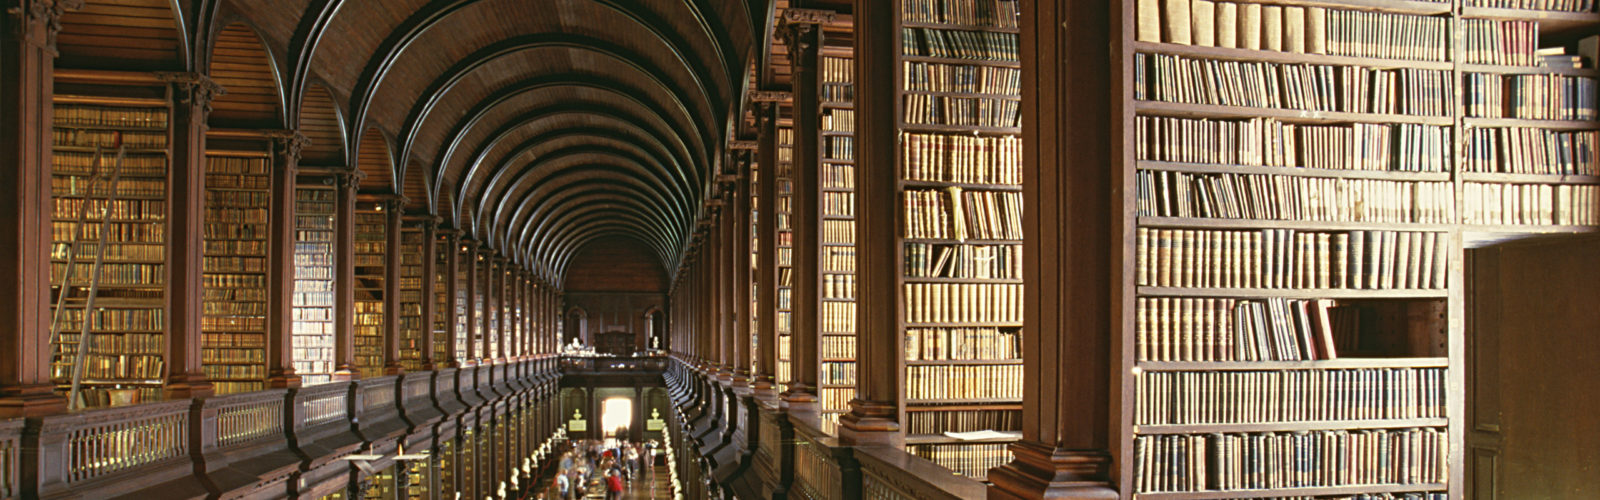 library-shelves-books-dublin